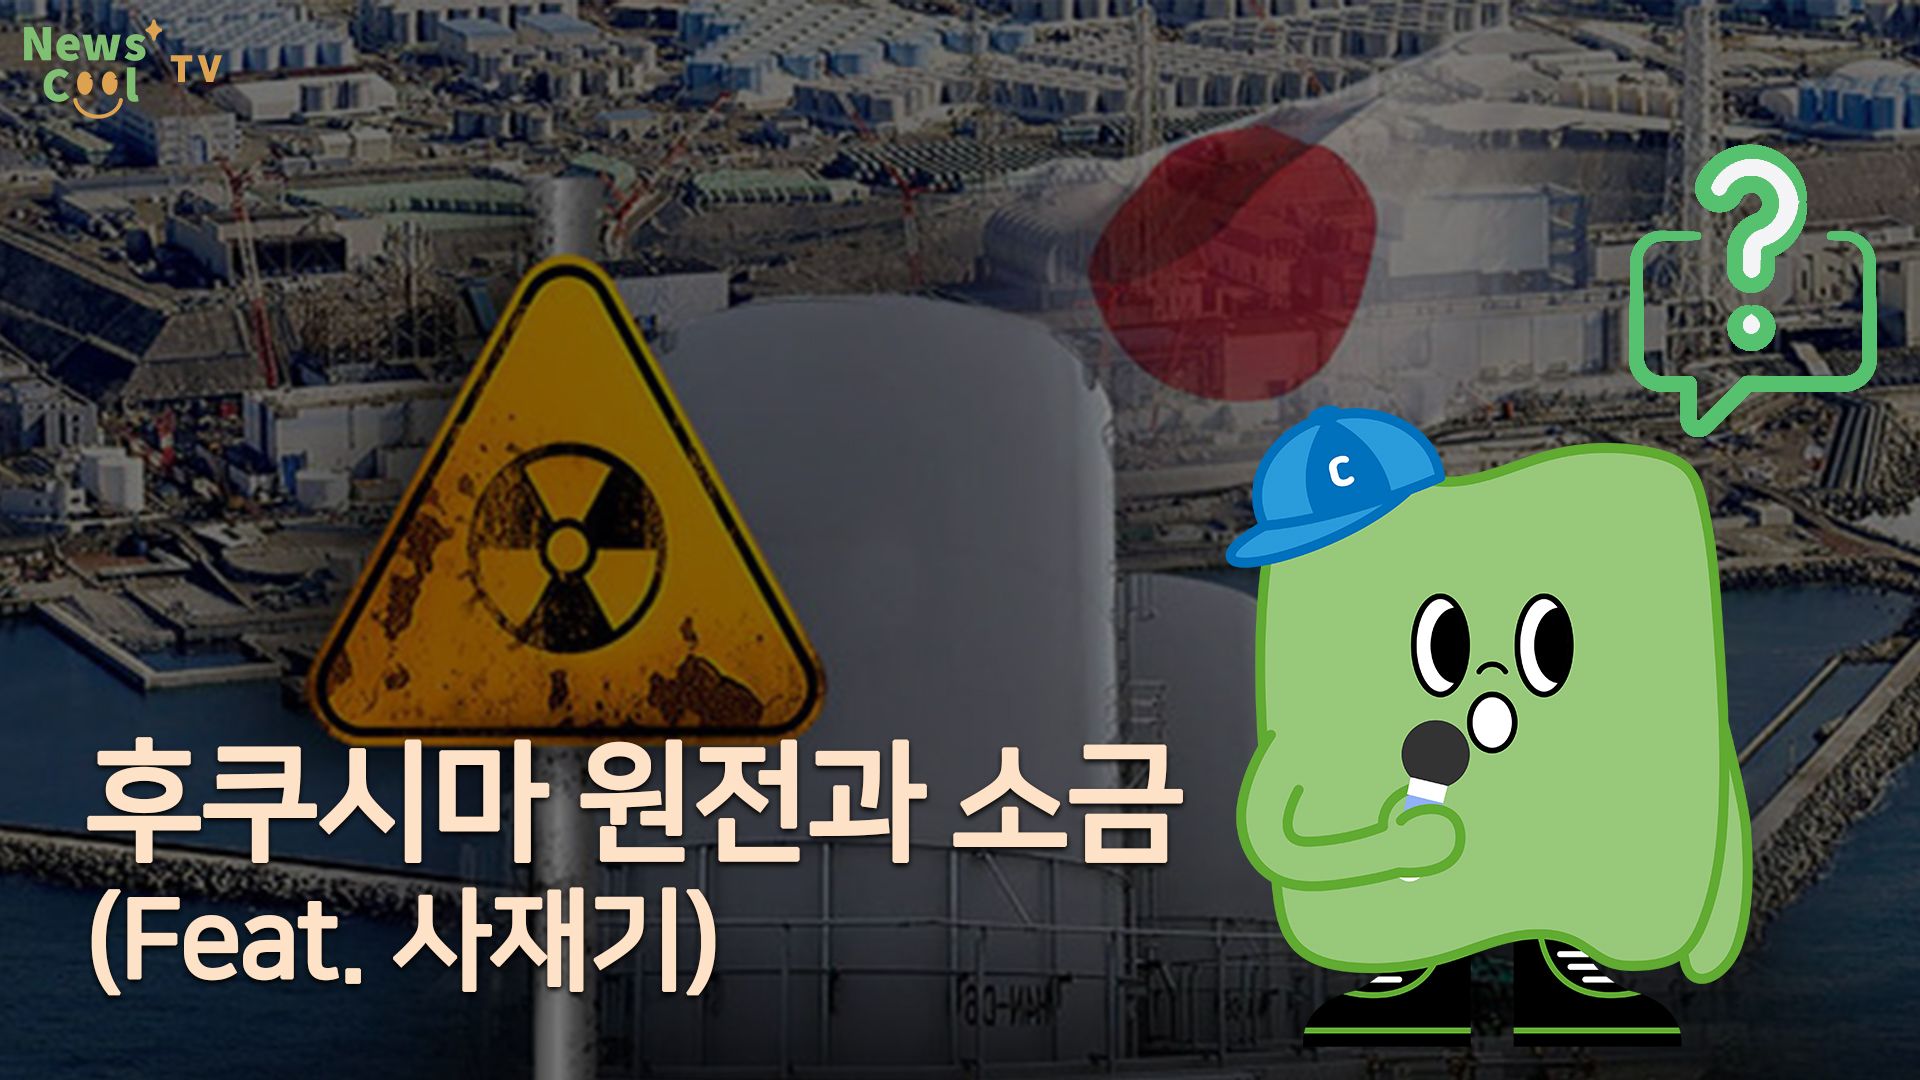 방사능 오염수 논란과 소금, 무슨 관련 있을까?